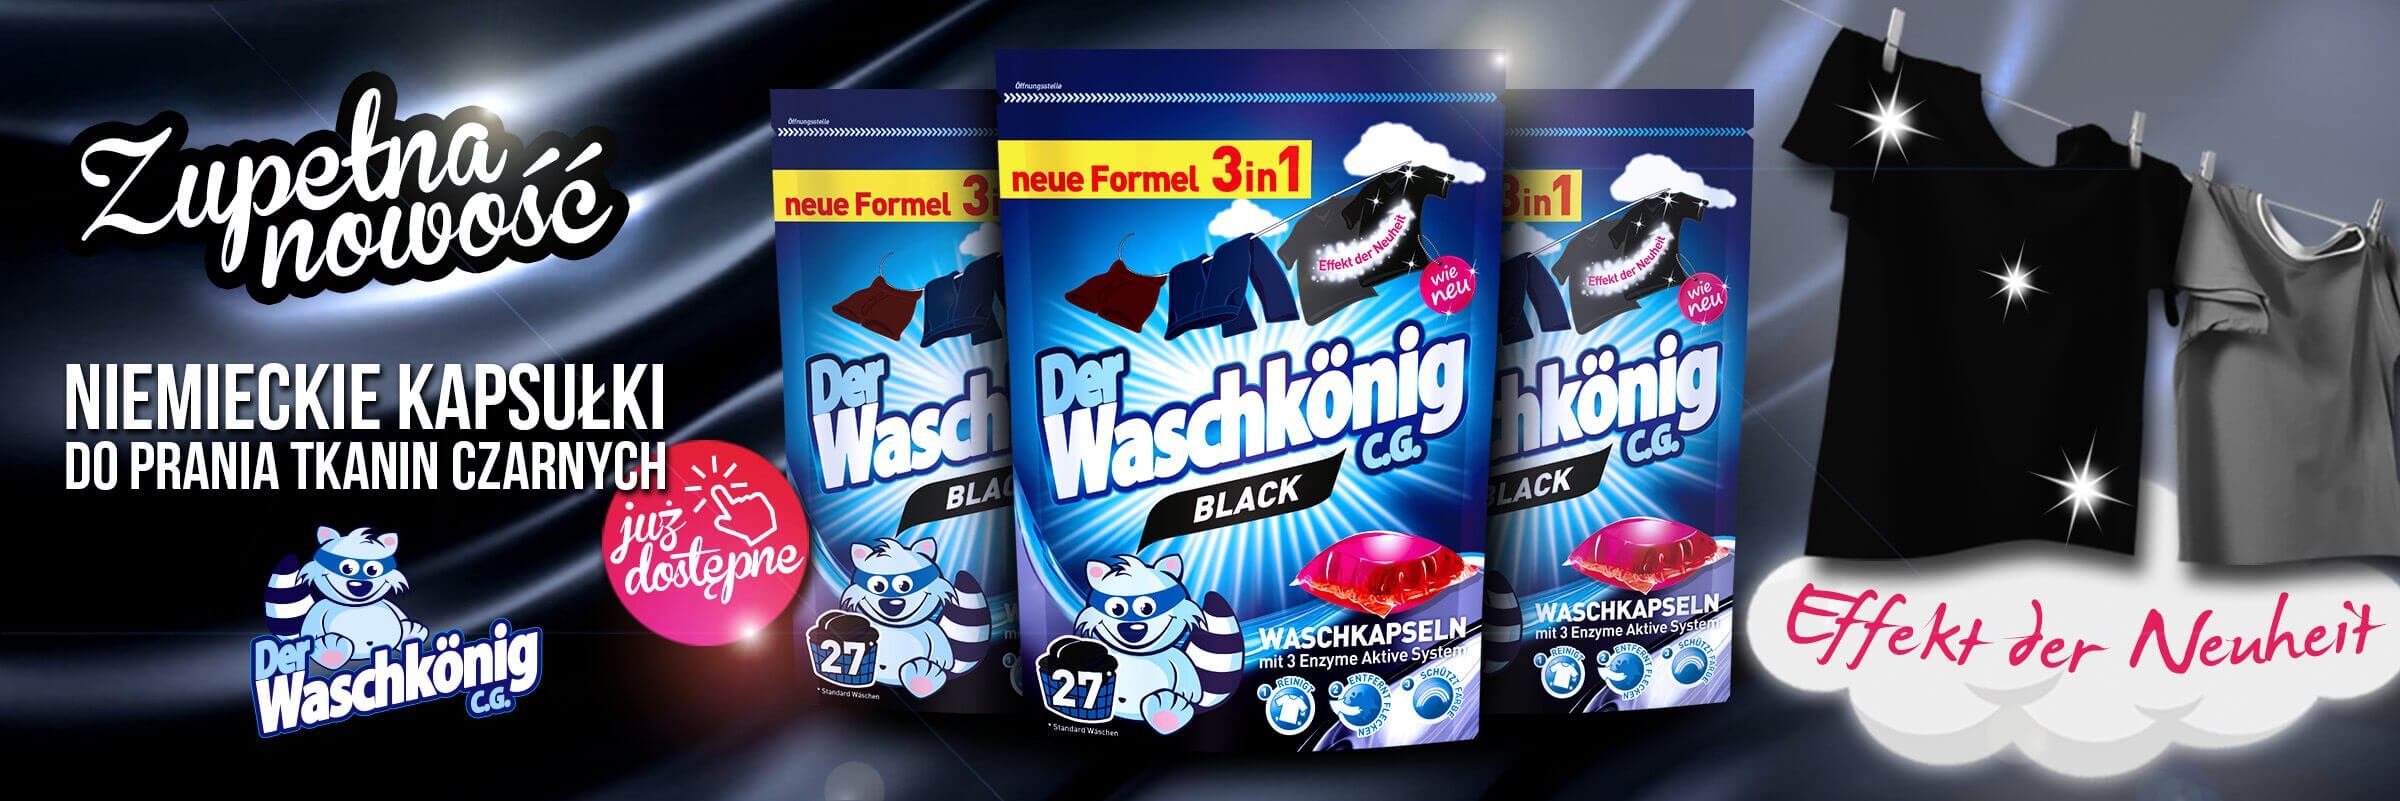 Nowe kapsułki do prania tkanin ciemnych Waschkonig Black 27 sztuk